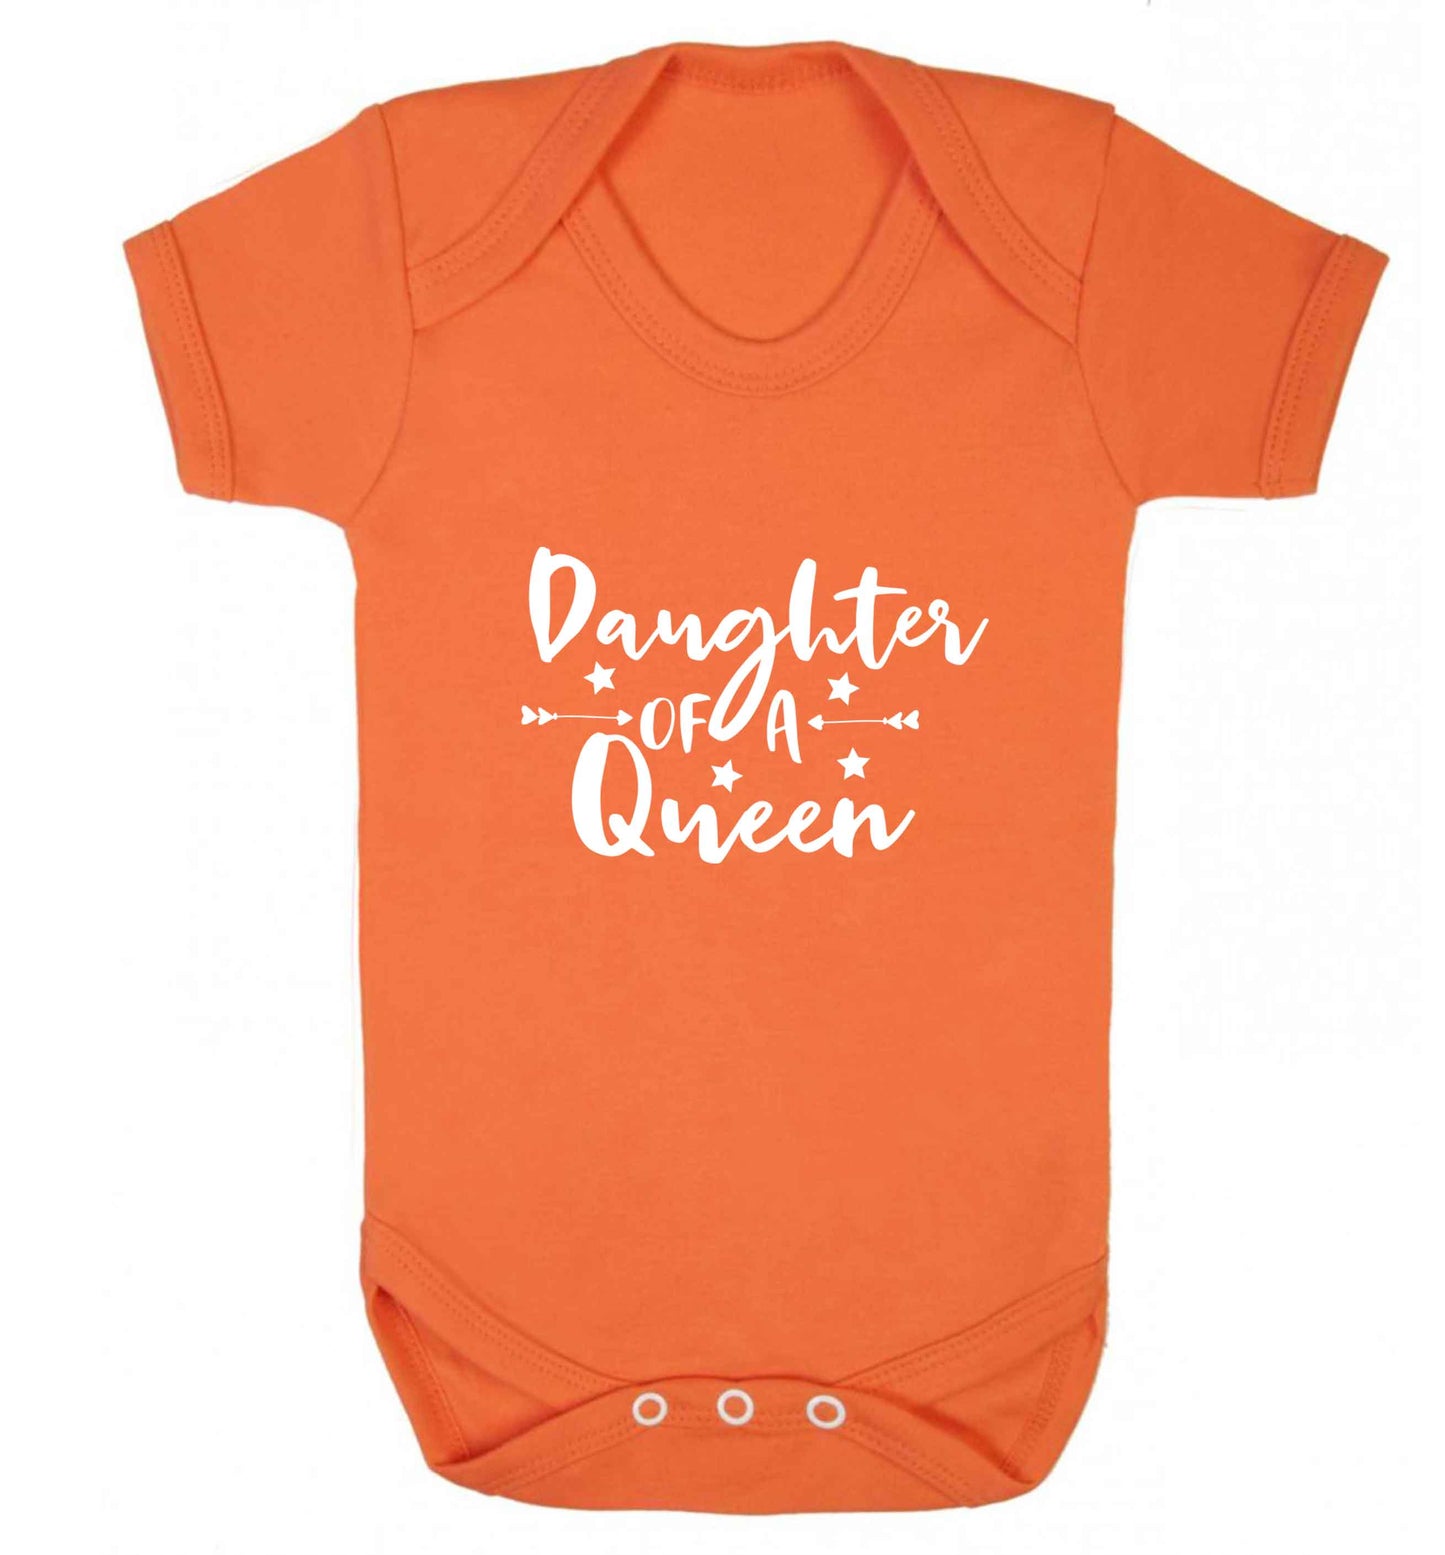 Daughter of a Queen baby vest orange 18-24 months